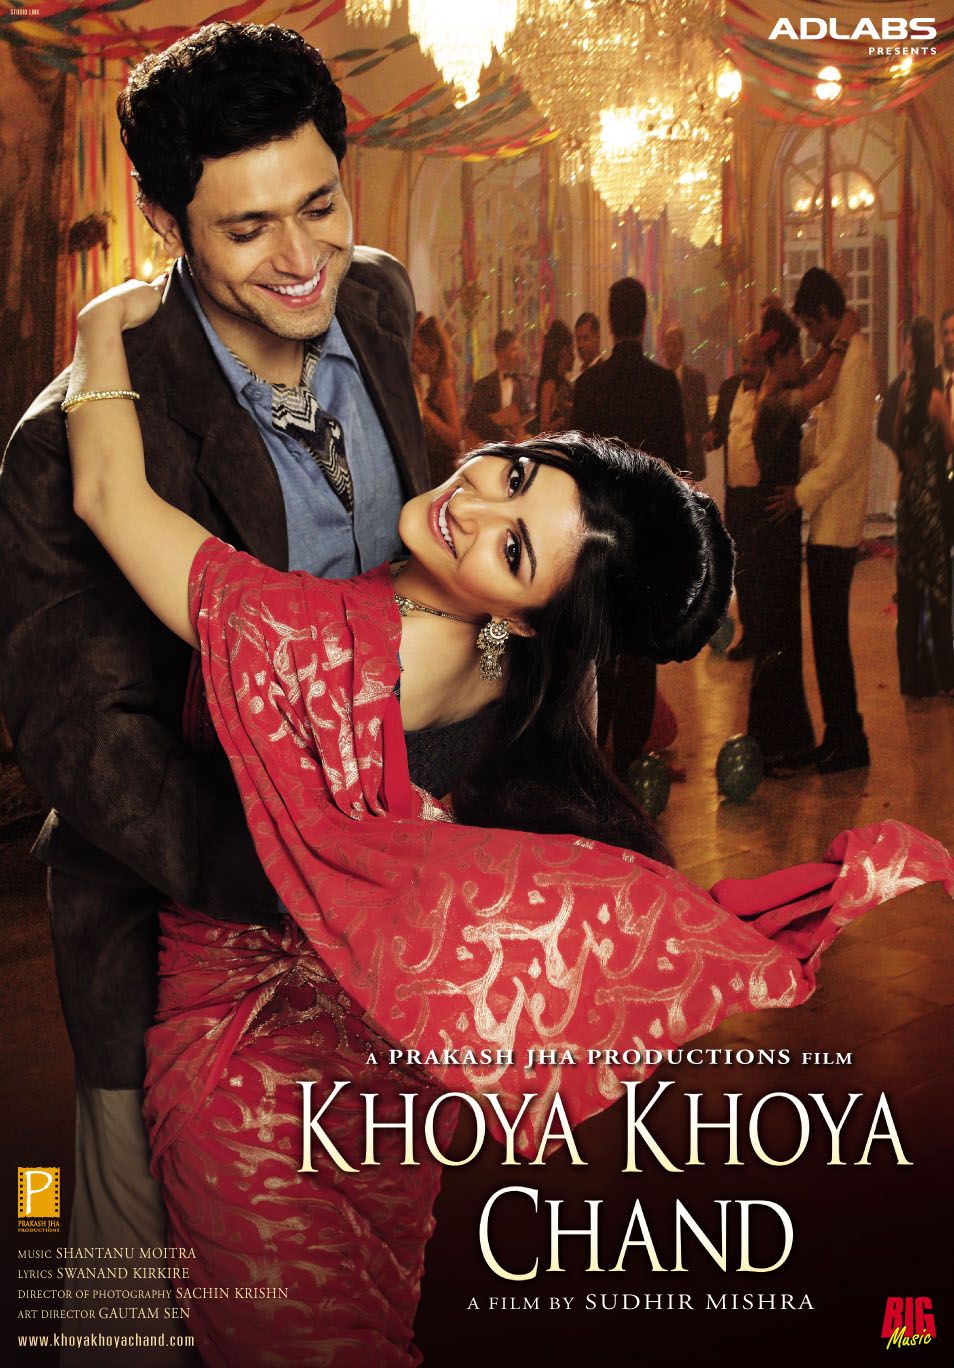 Extra Large Movie Poster Image for Khoya Khoya Chand (#2 of 3)